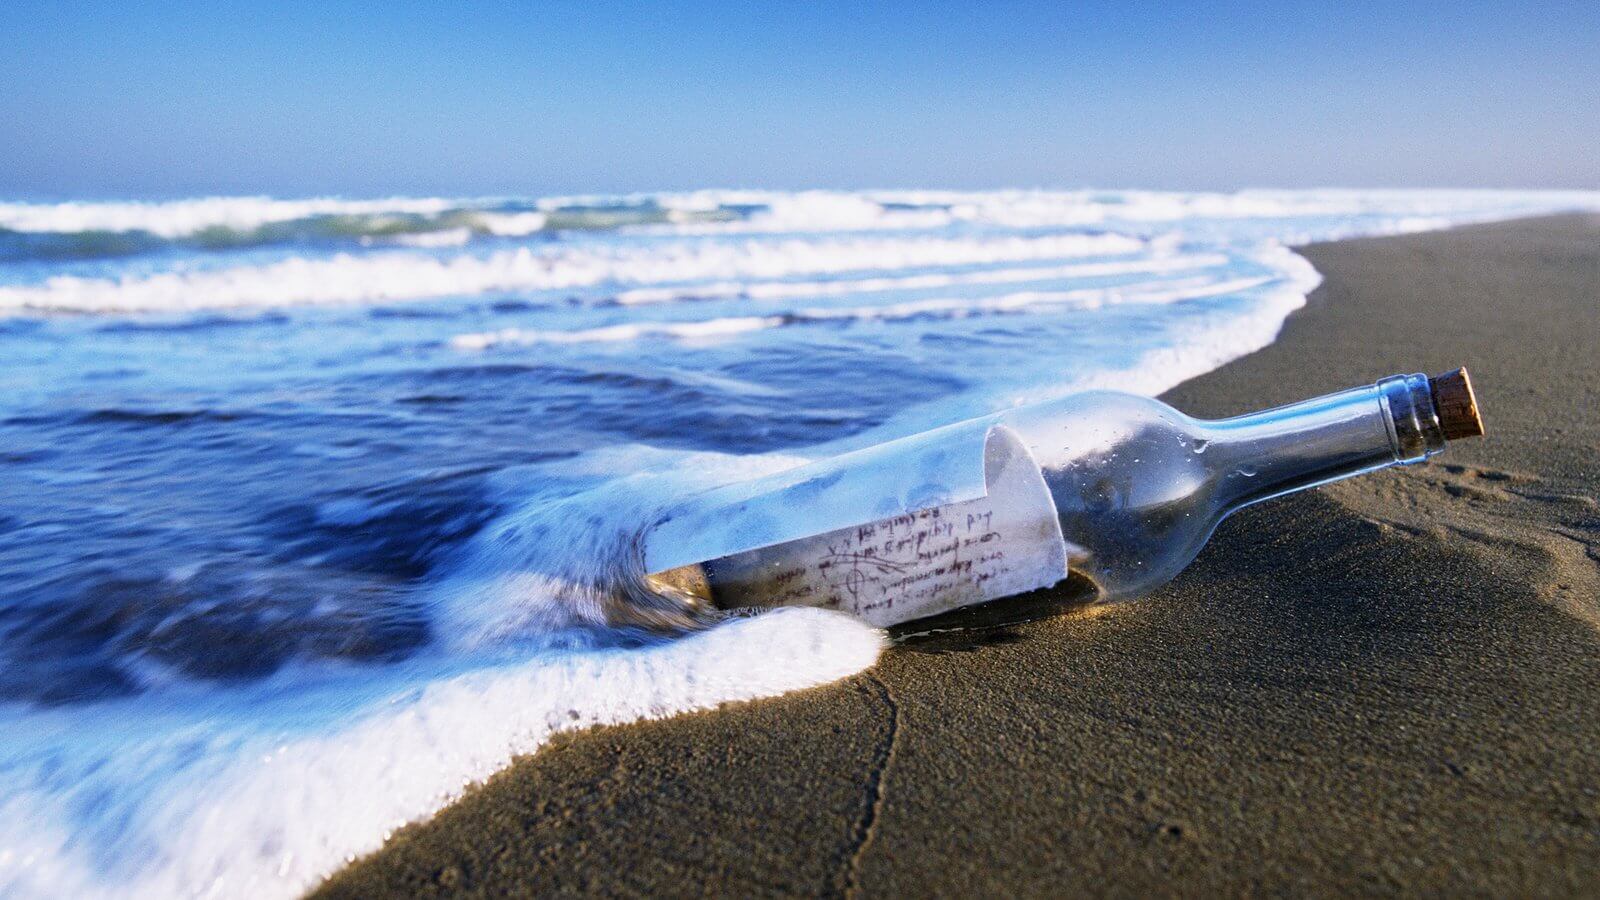 कितना फ्लोट कर सकते हैं एक बोतल में एक संदेश फेंक करने के लिए तो यह सागर में?